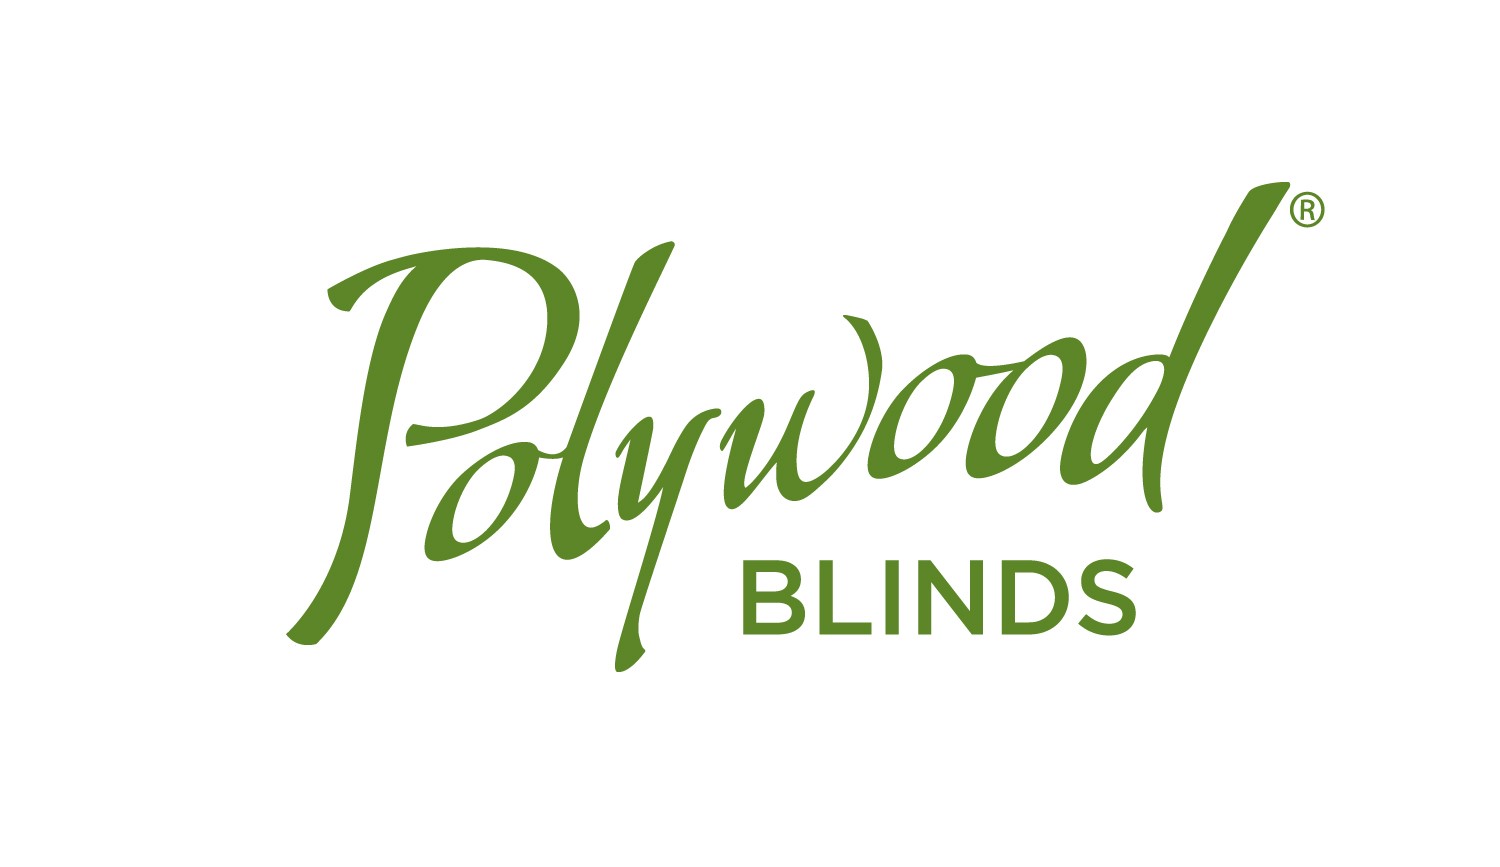 Polywood blinds logo